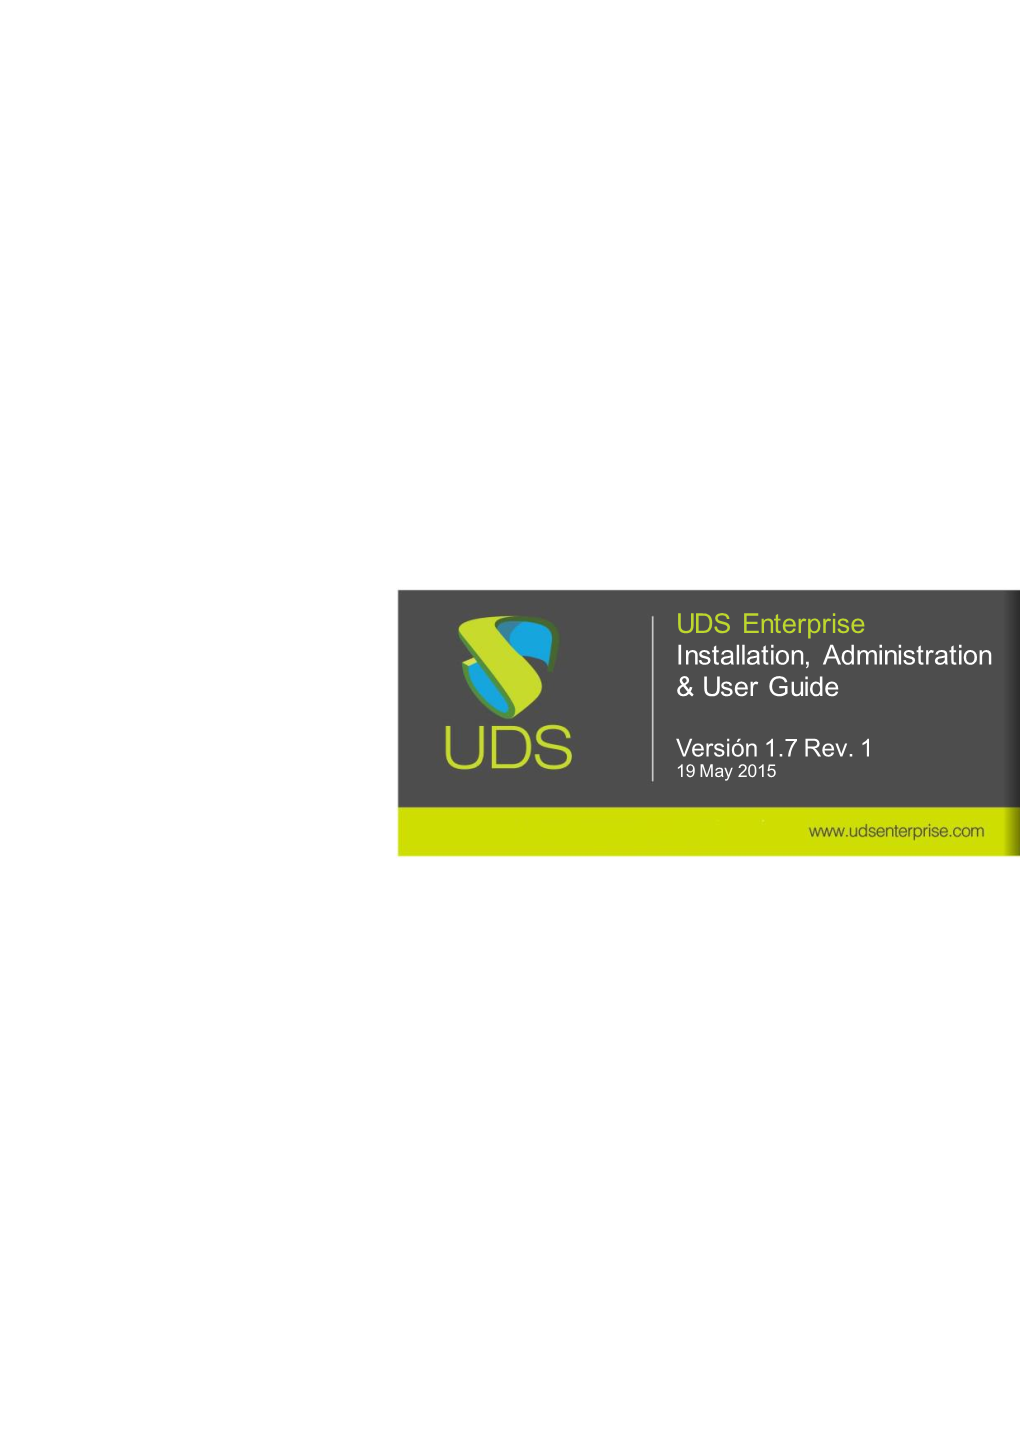 UDS Enterprise 1.7 Installation, Administration & User Guide